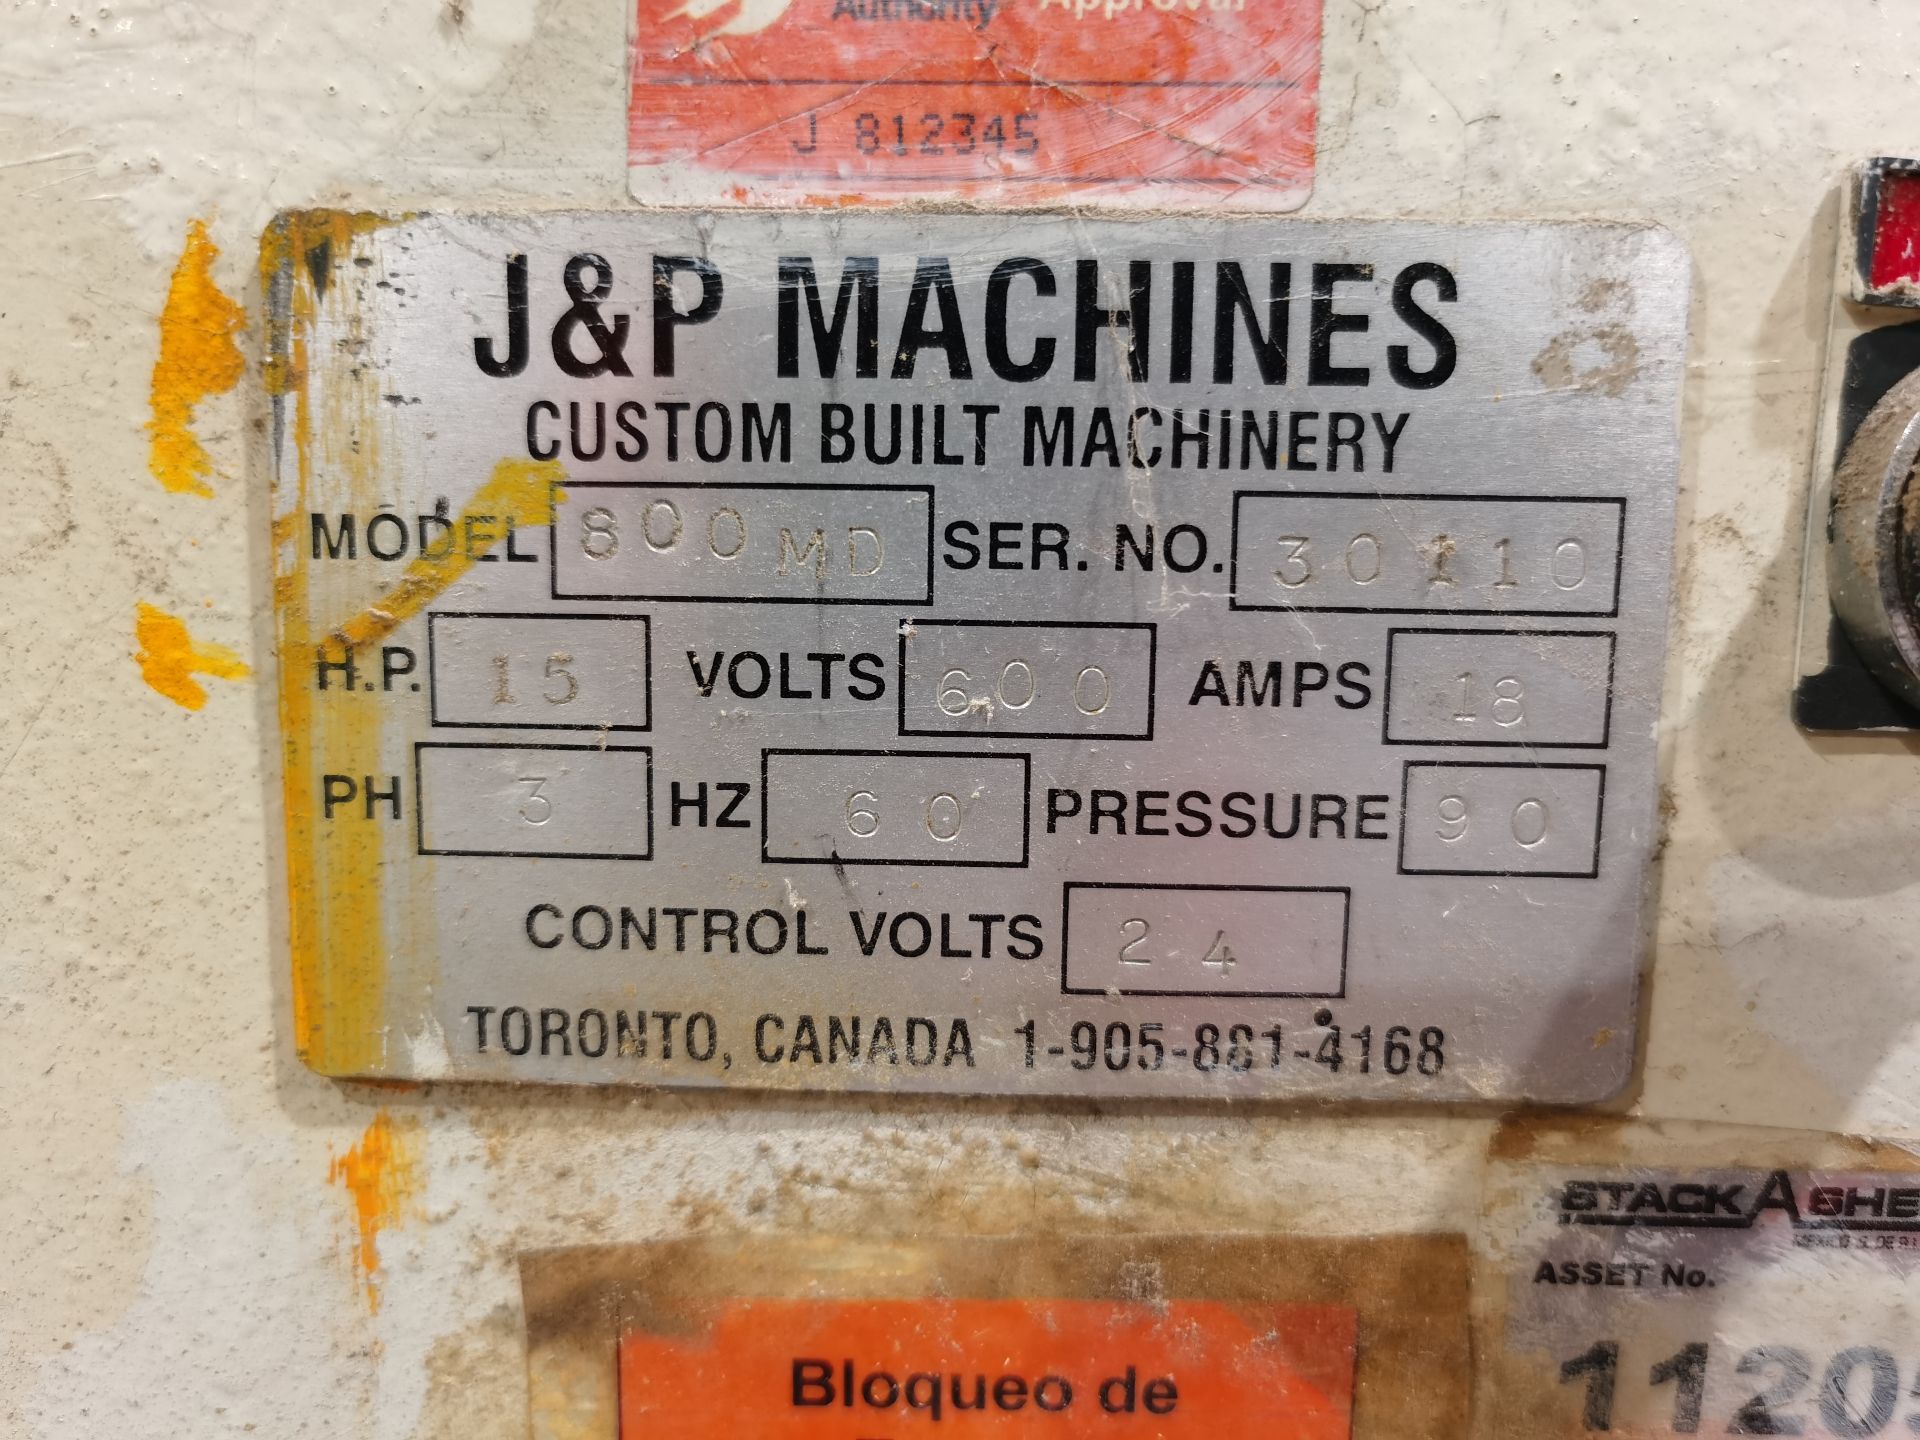 J&P Gables Drilling Machine, Model 800 MD, S/N 30110,600 V / 60 Hz, ASSET NUMBER 11205 - Image 12 of 31